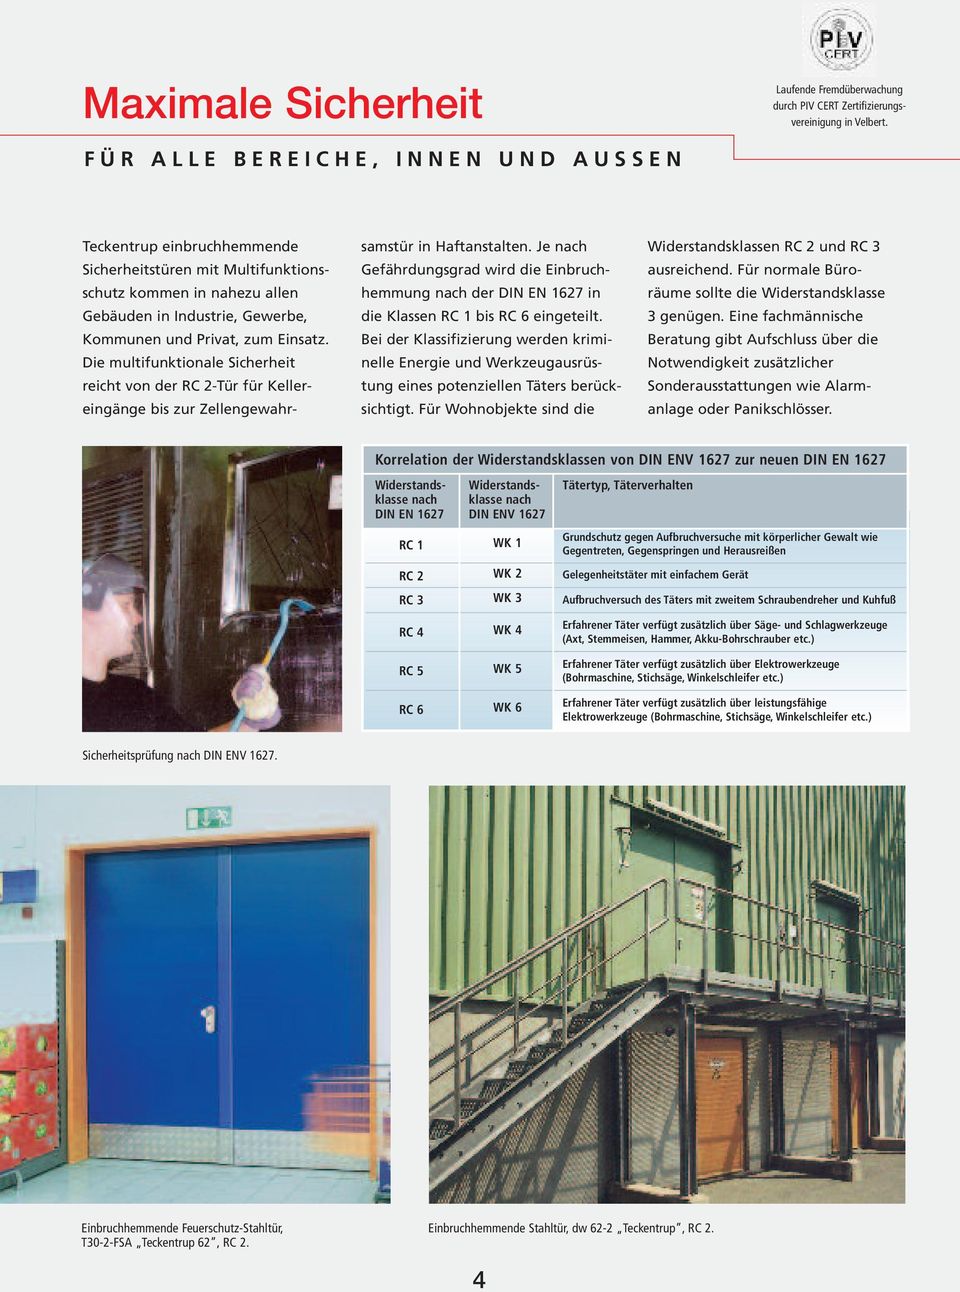 Privat, zum Einsatz. Die multifunktionale Sicherheit reicht von der RC 2-Tür für Keller - eingänge bis zur Zellengewahr - samstür in Haftanstalten.